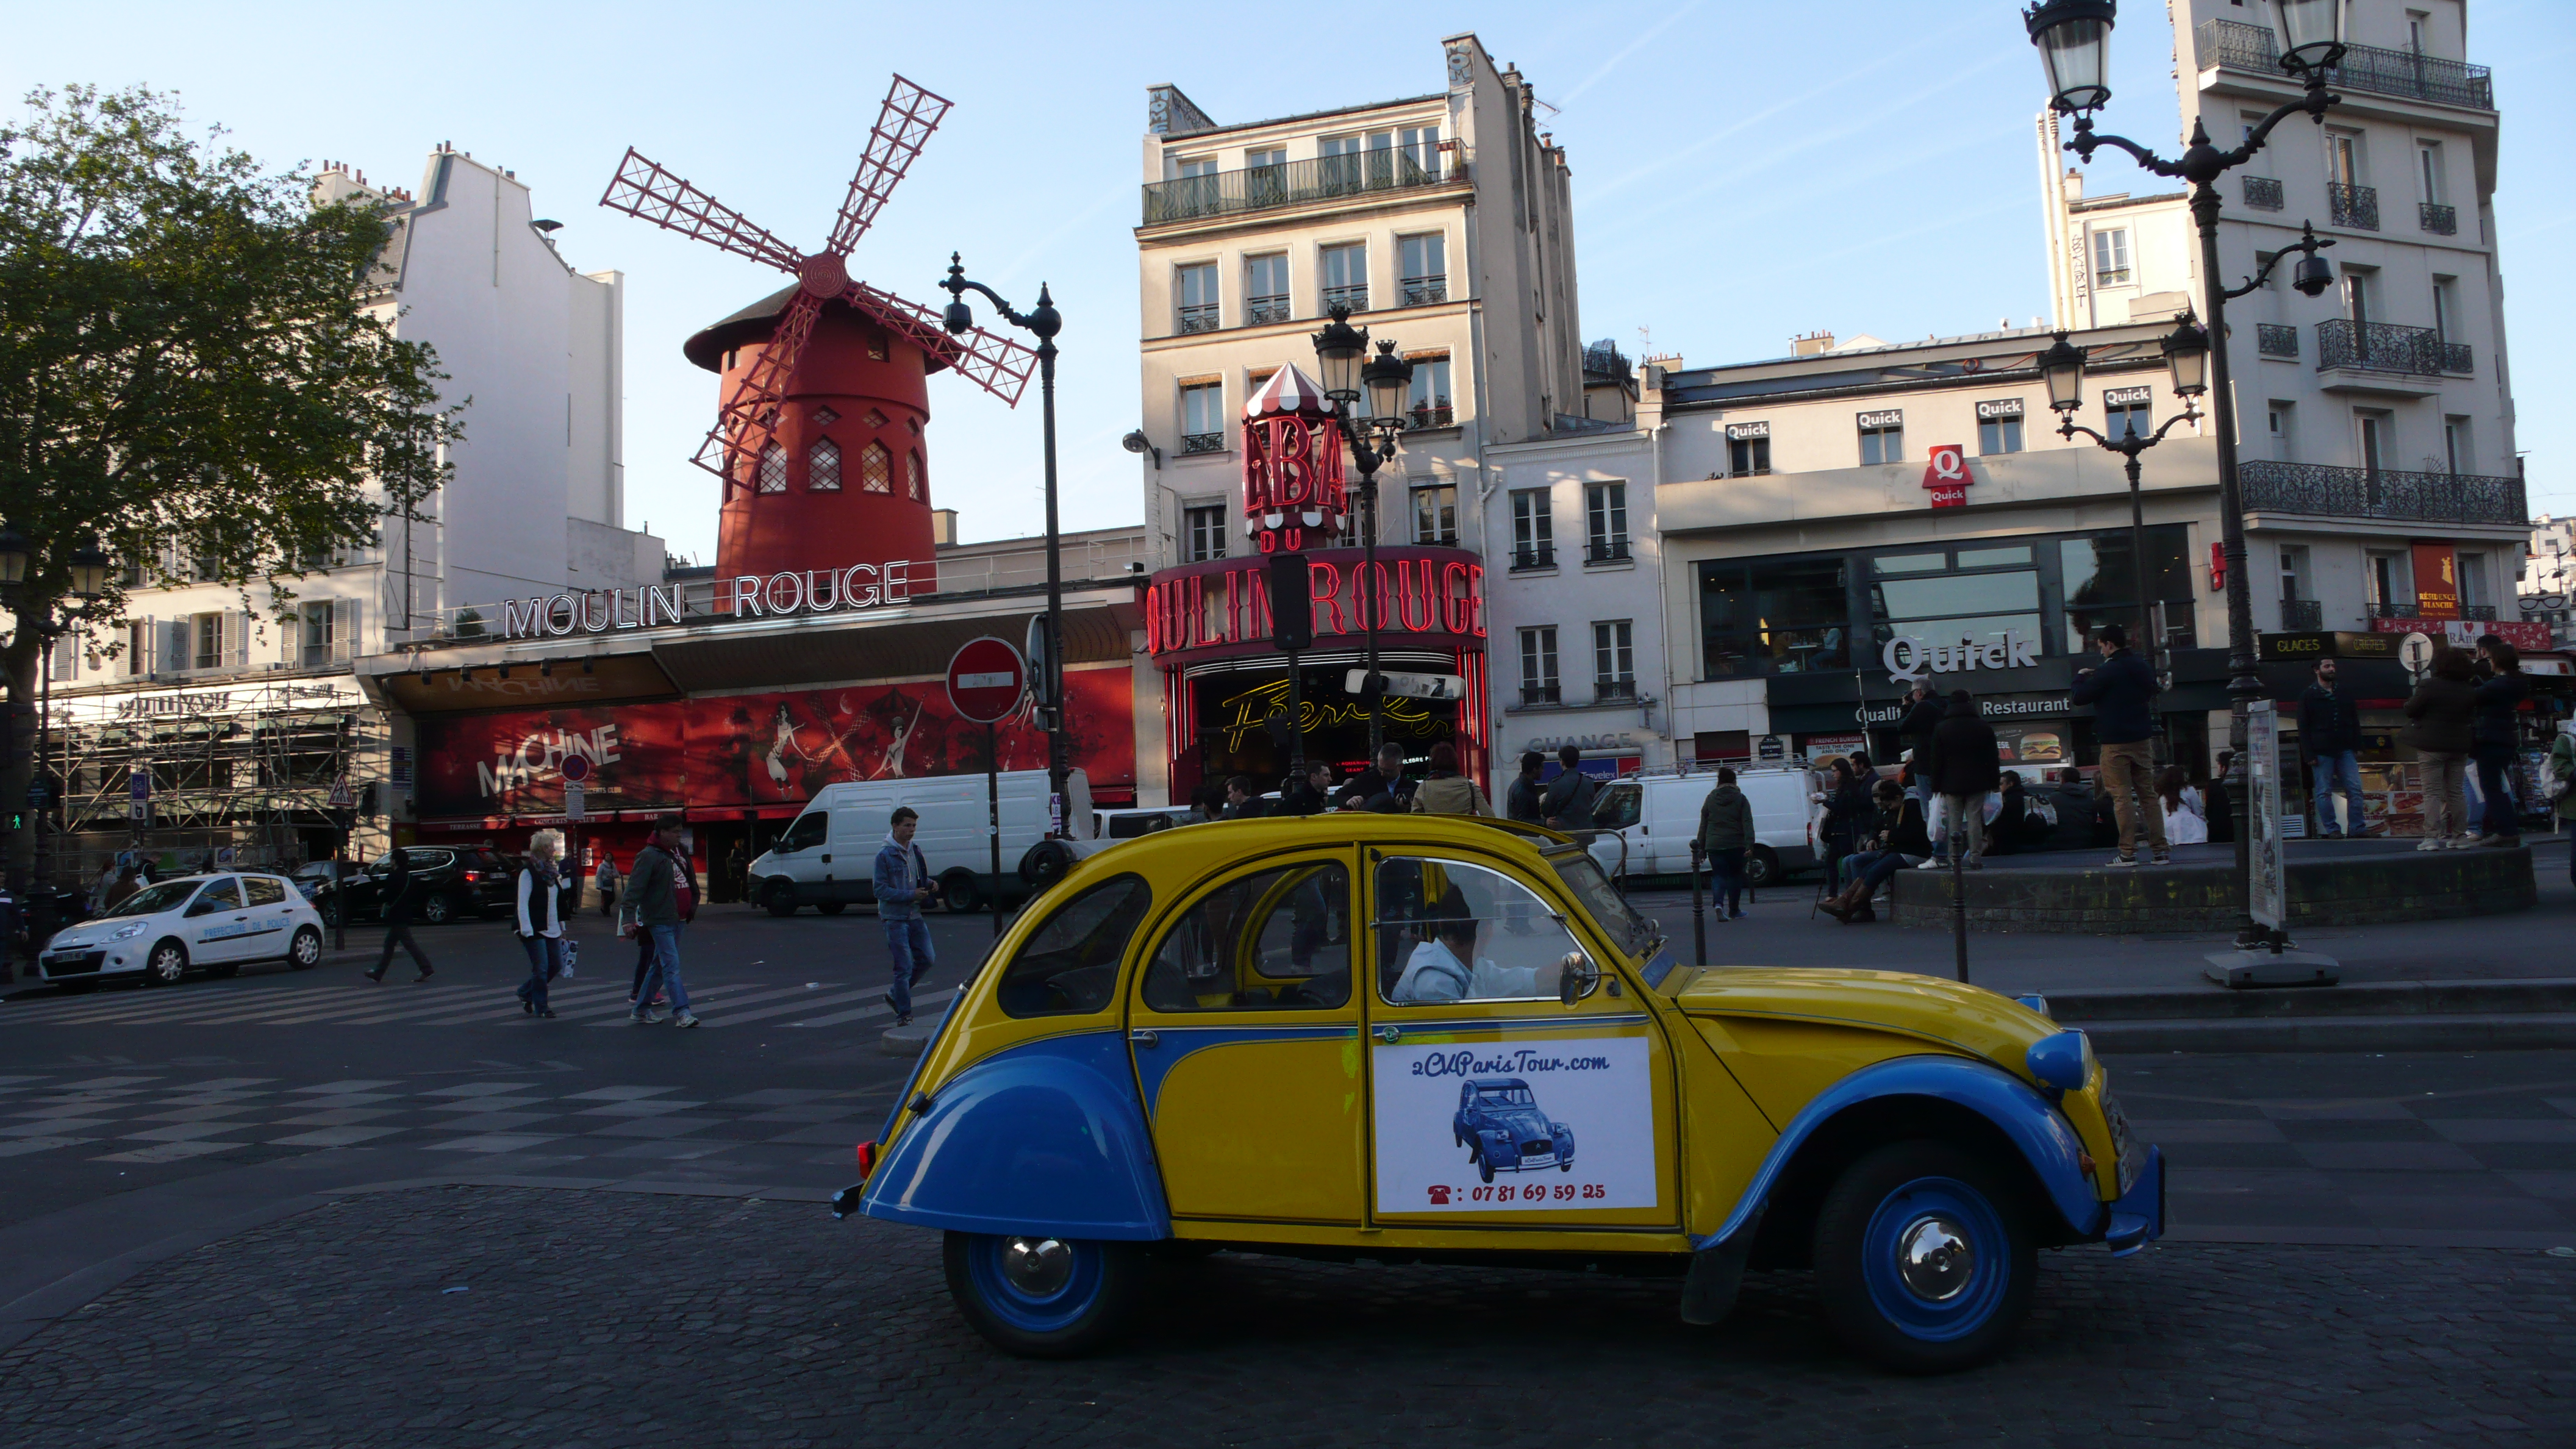 2CV Paris Tour : Visit Paris by 2CV! The 2CV tour and the Moulin Rouge